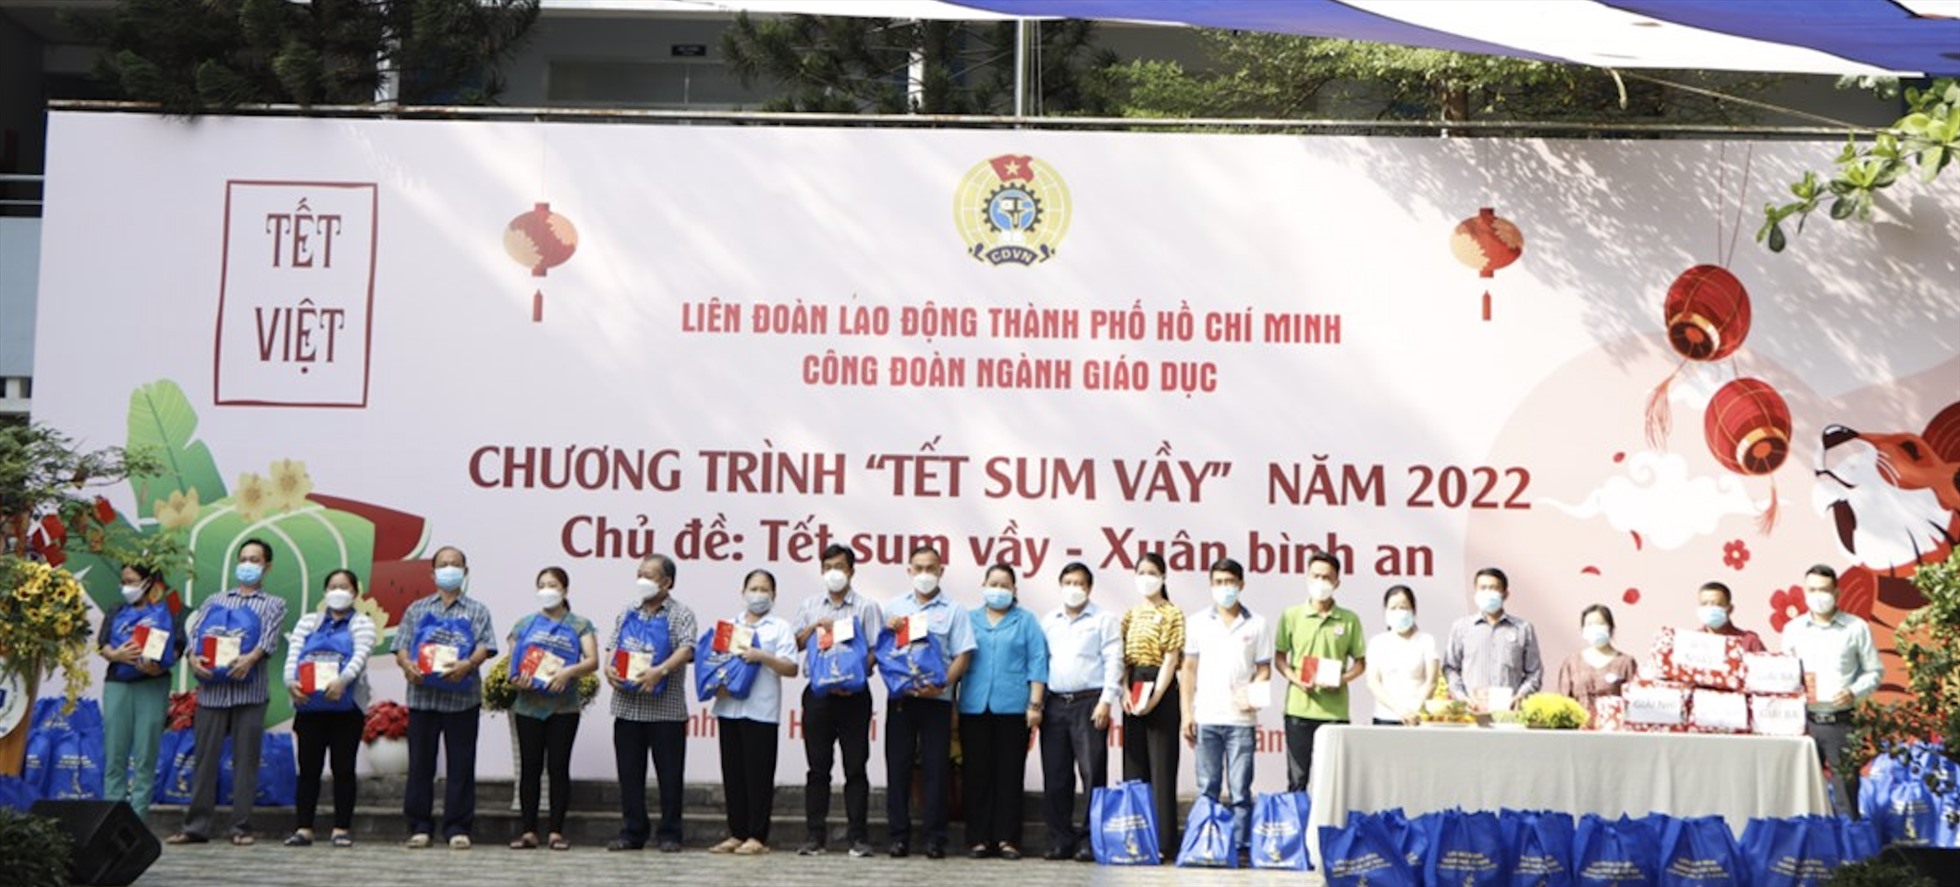 Công đoàn ngành Giáo dục Thành phố Hồ Chí Minh tổ chức chương trình “Tết sum vầy” năm 2022 với chủ đề : Tết sum vầy – Xuân bình an